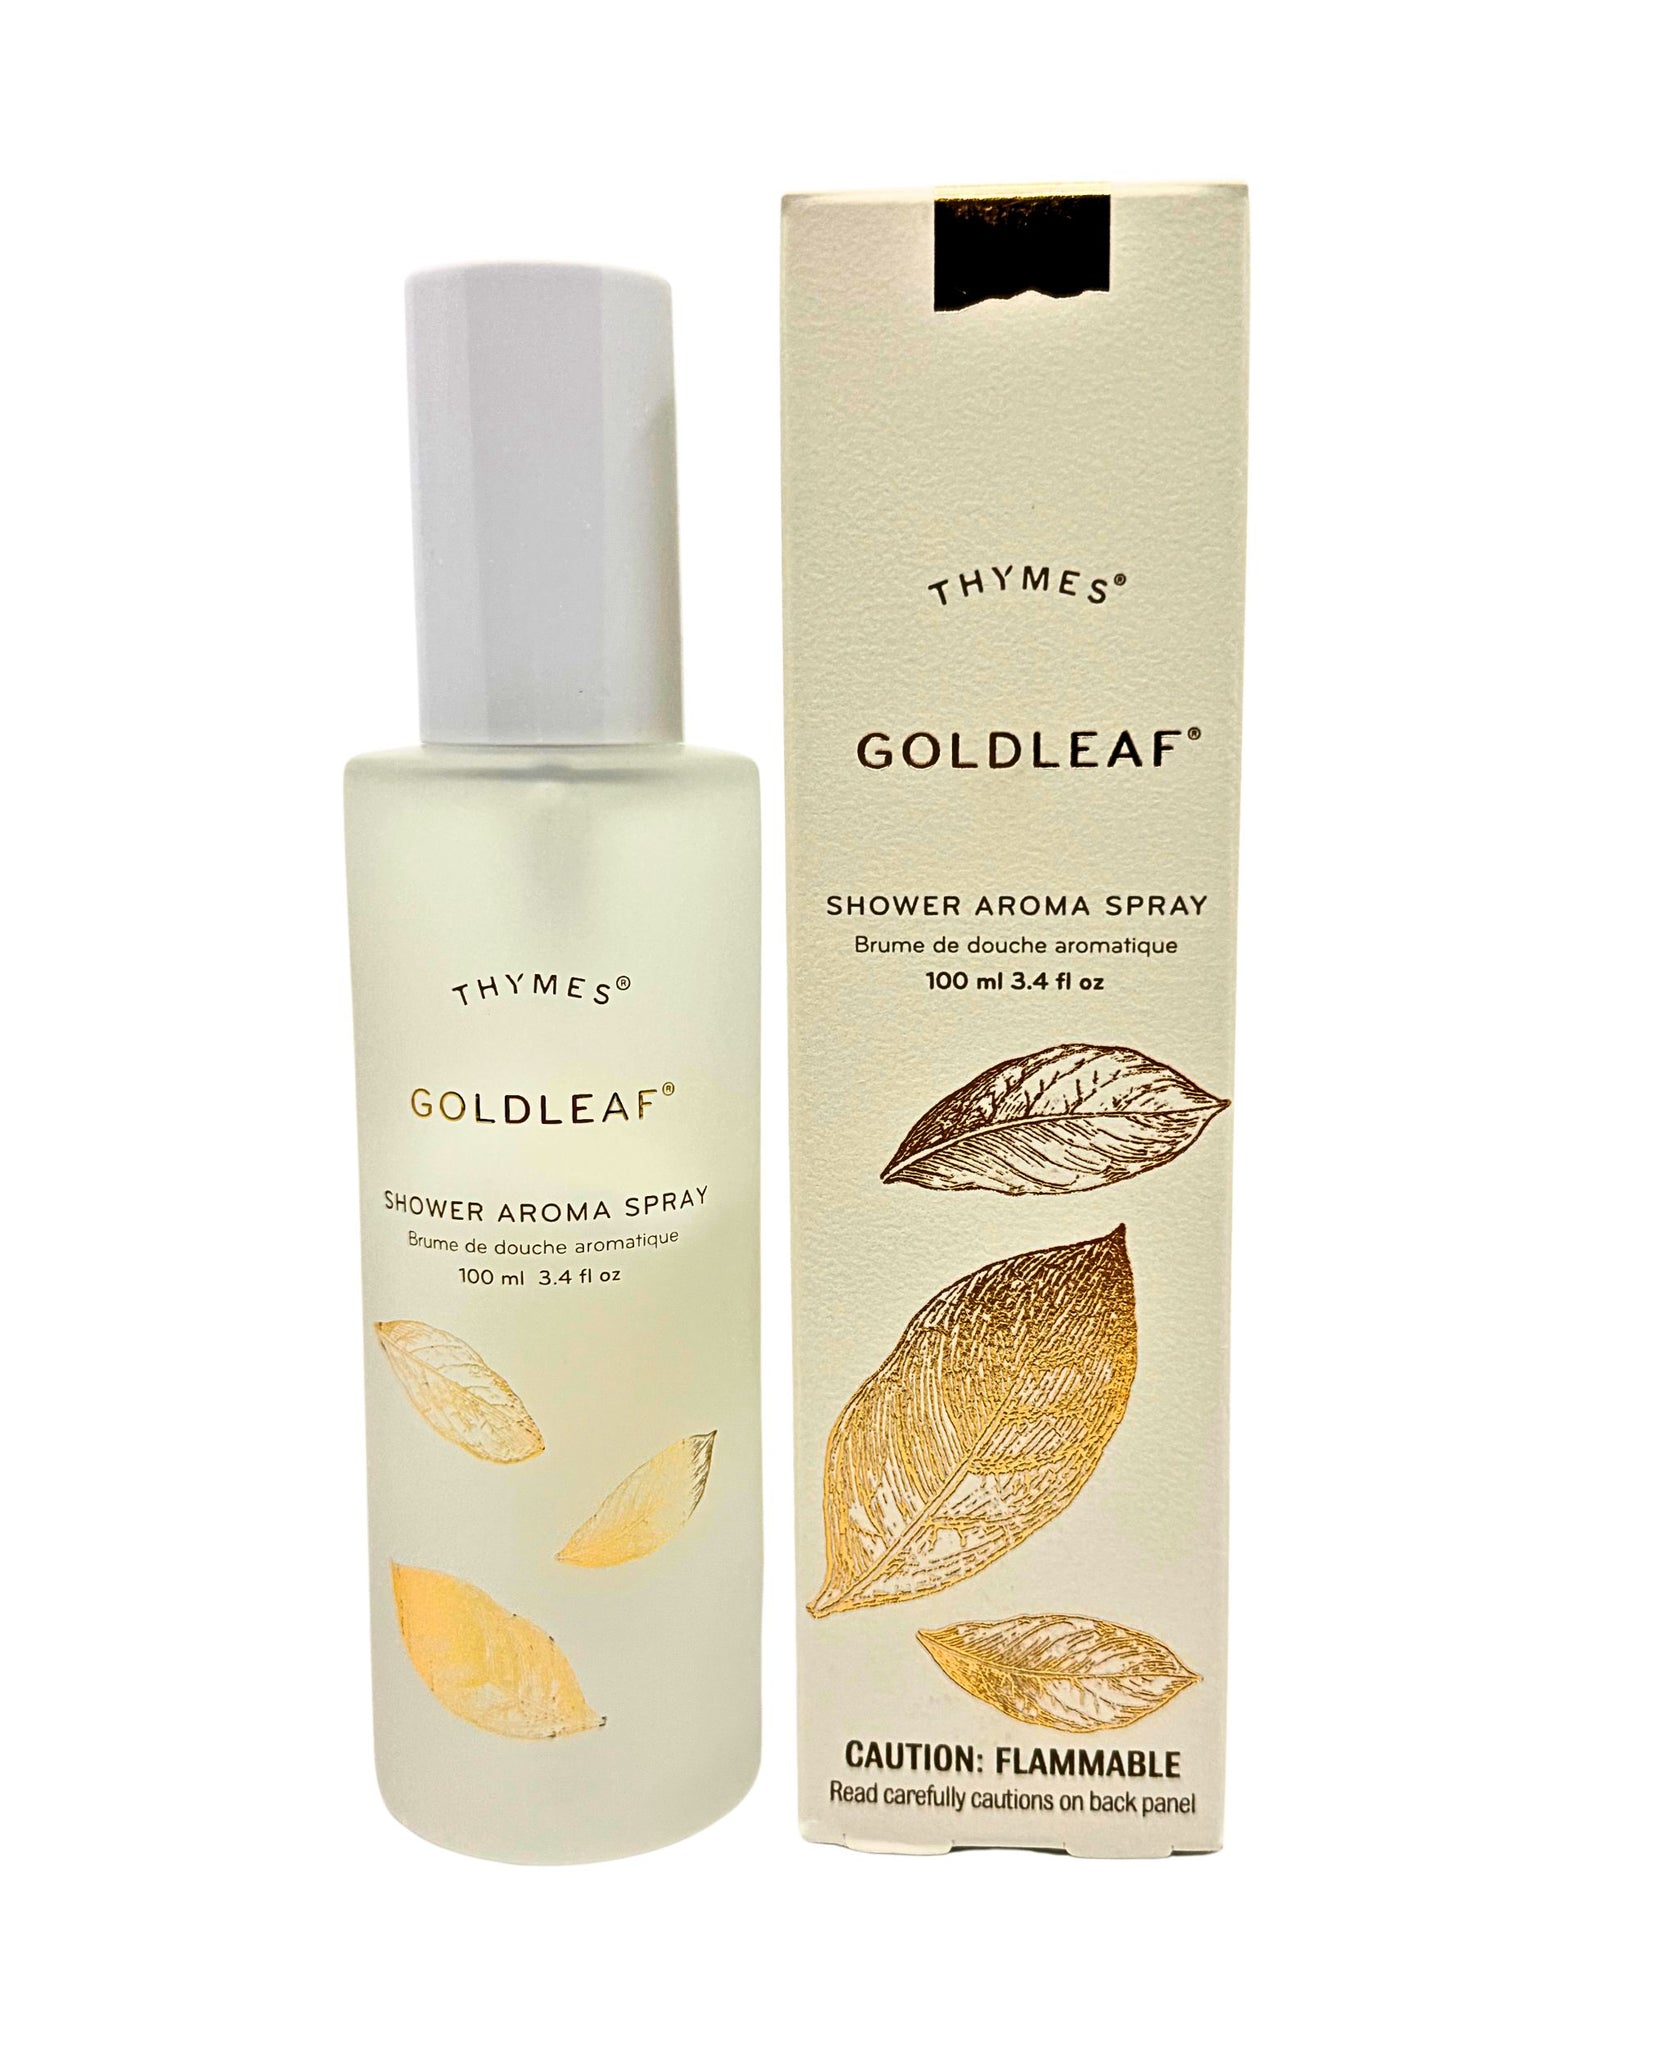 Thymes Goldleaf Shower Aroma Spray